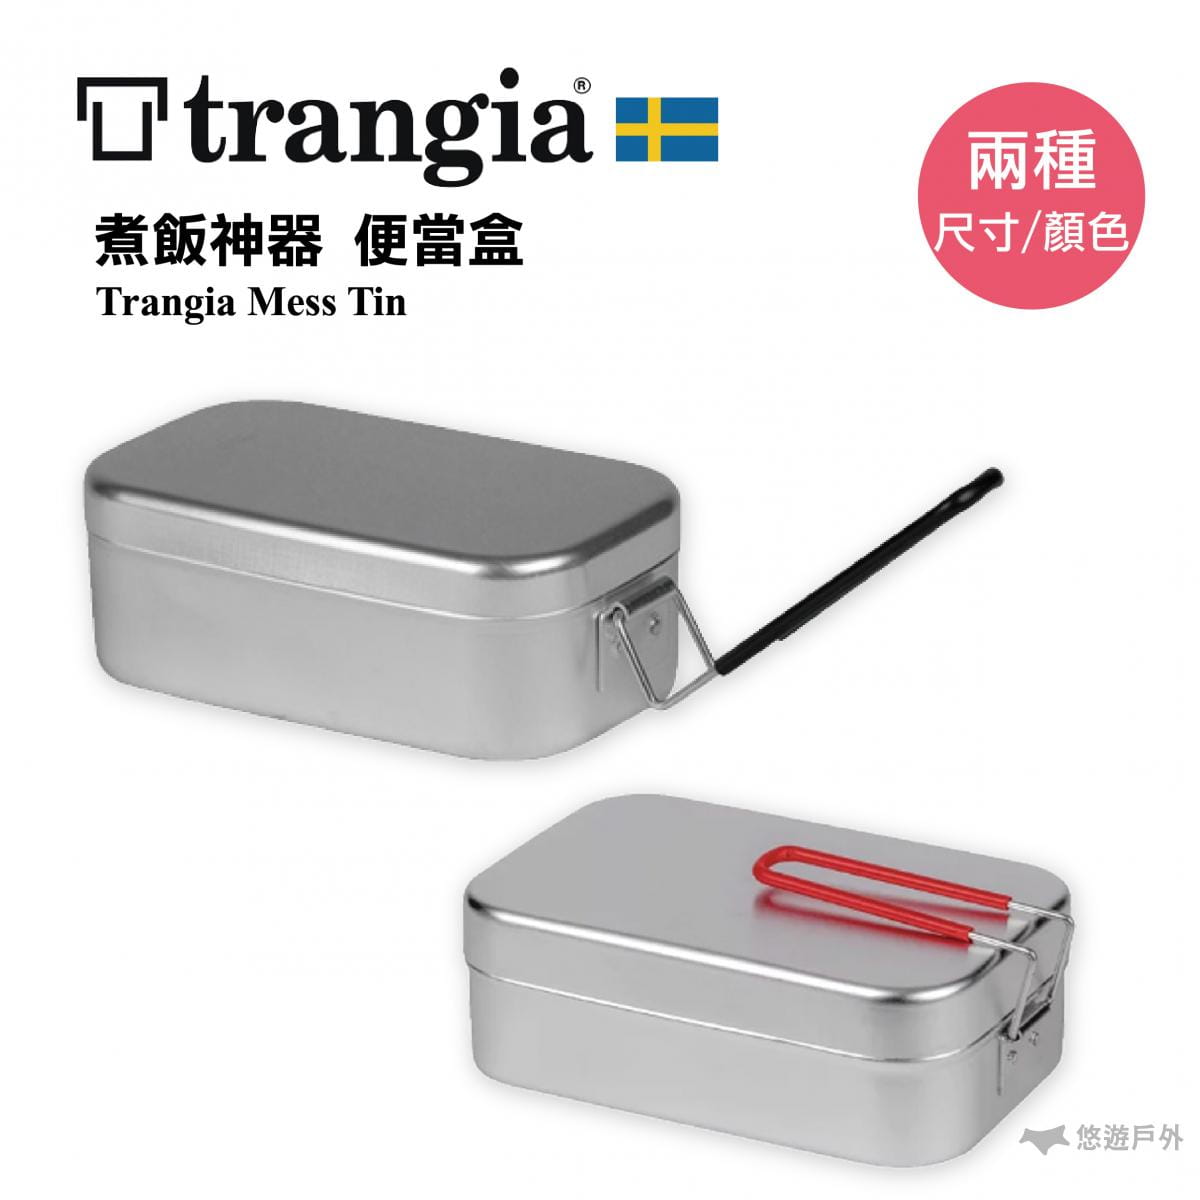 【悠遊戶外】瑞典 Trangia Mess Tin 煮飯神器 (小) 0